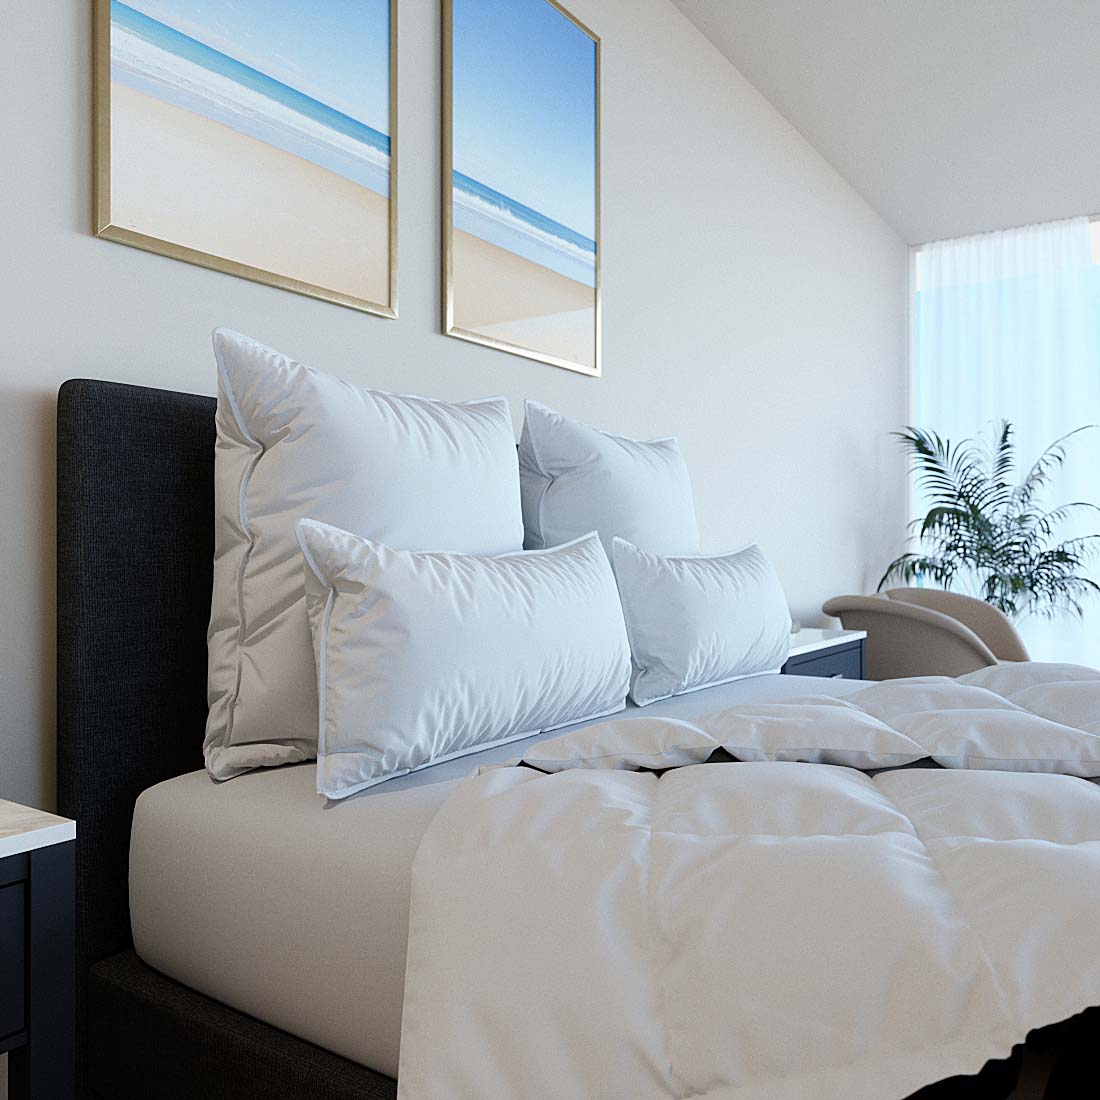 100% coton bon marché de gros oreillers hotel Hilton 5 étoiles oreiller  standard pour dormir - Chine L'oreiller et Oreillers Drap de lit prix